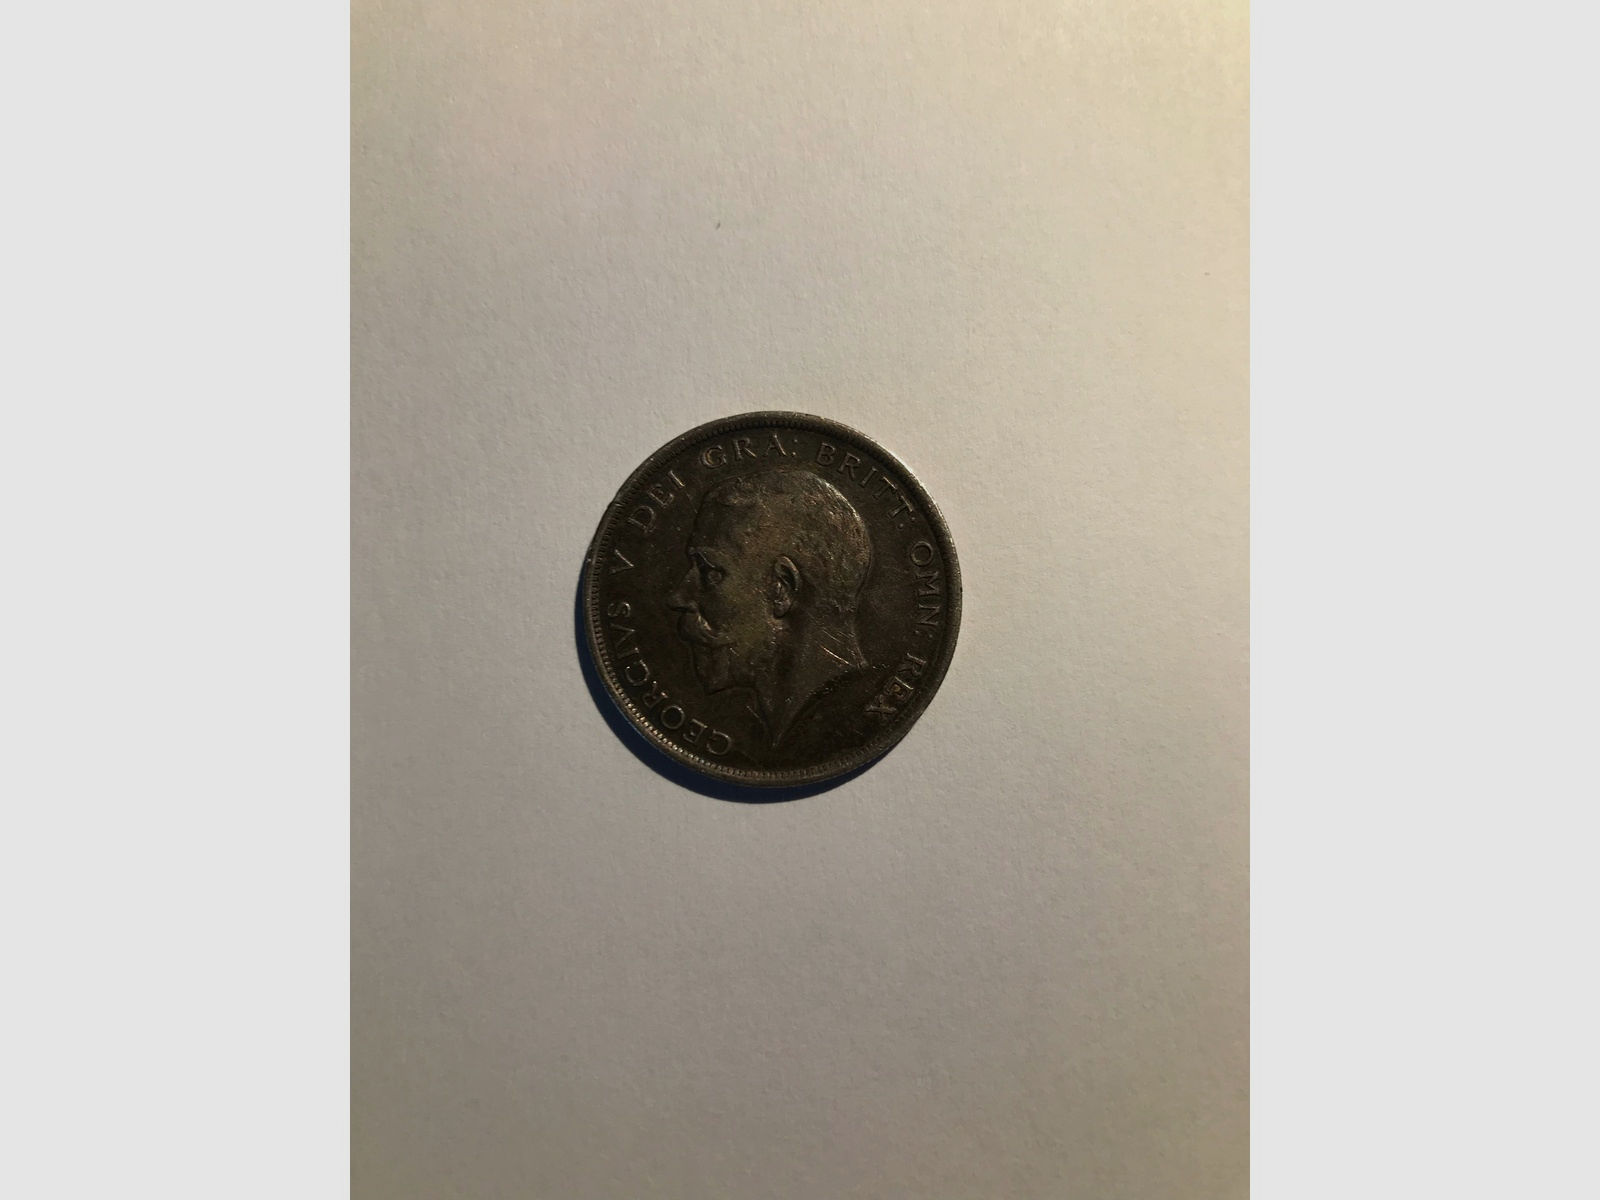 Half Crown Münze von 1917